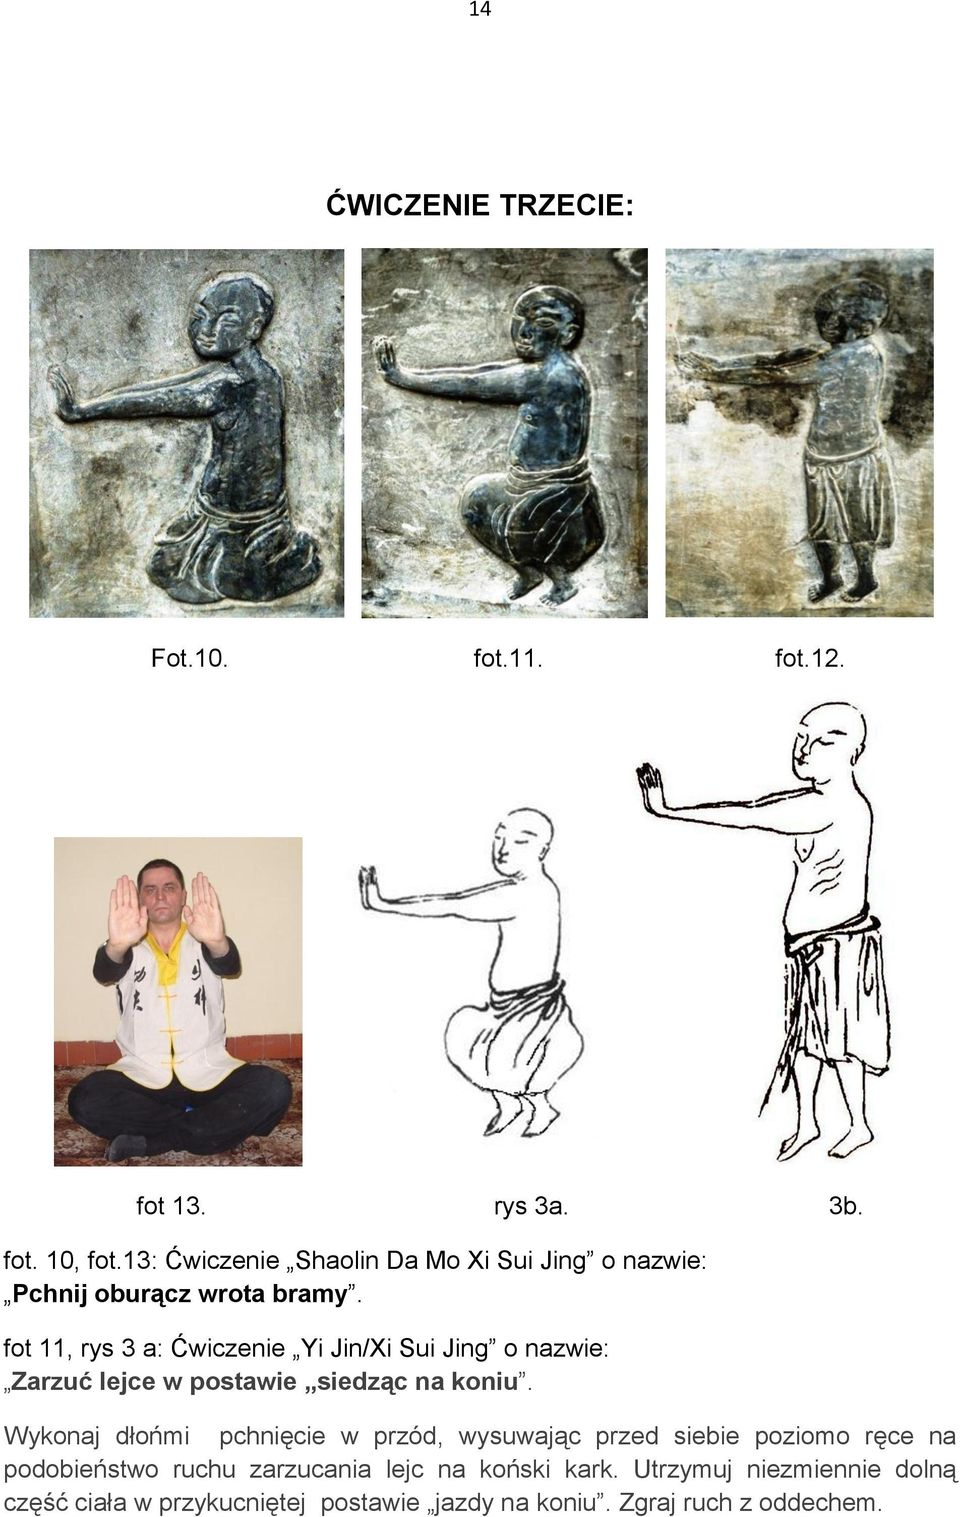 fot 11, rys 3 a: Ćwiczenie Yi Jin/Xi Sui Jing o nazwie: Zarzuć lejce w postawie siedząc na koniu.